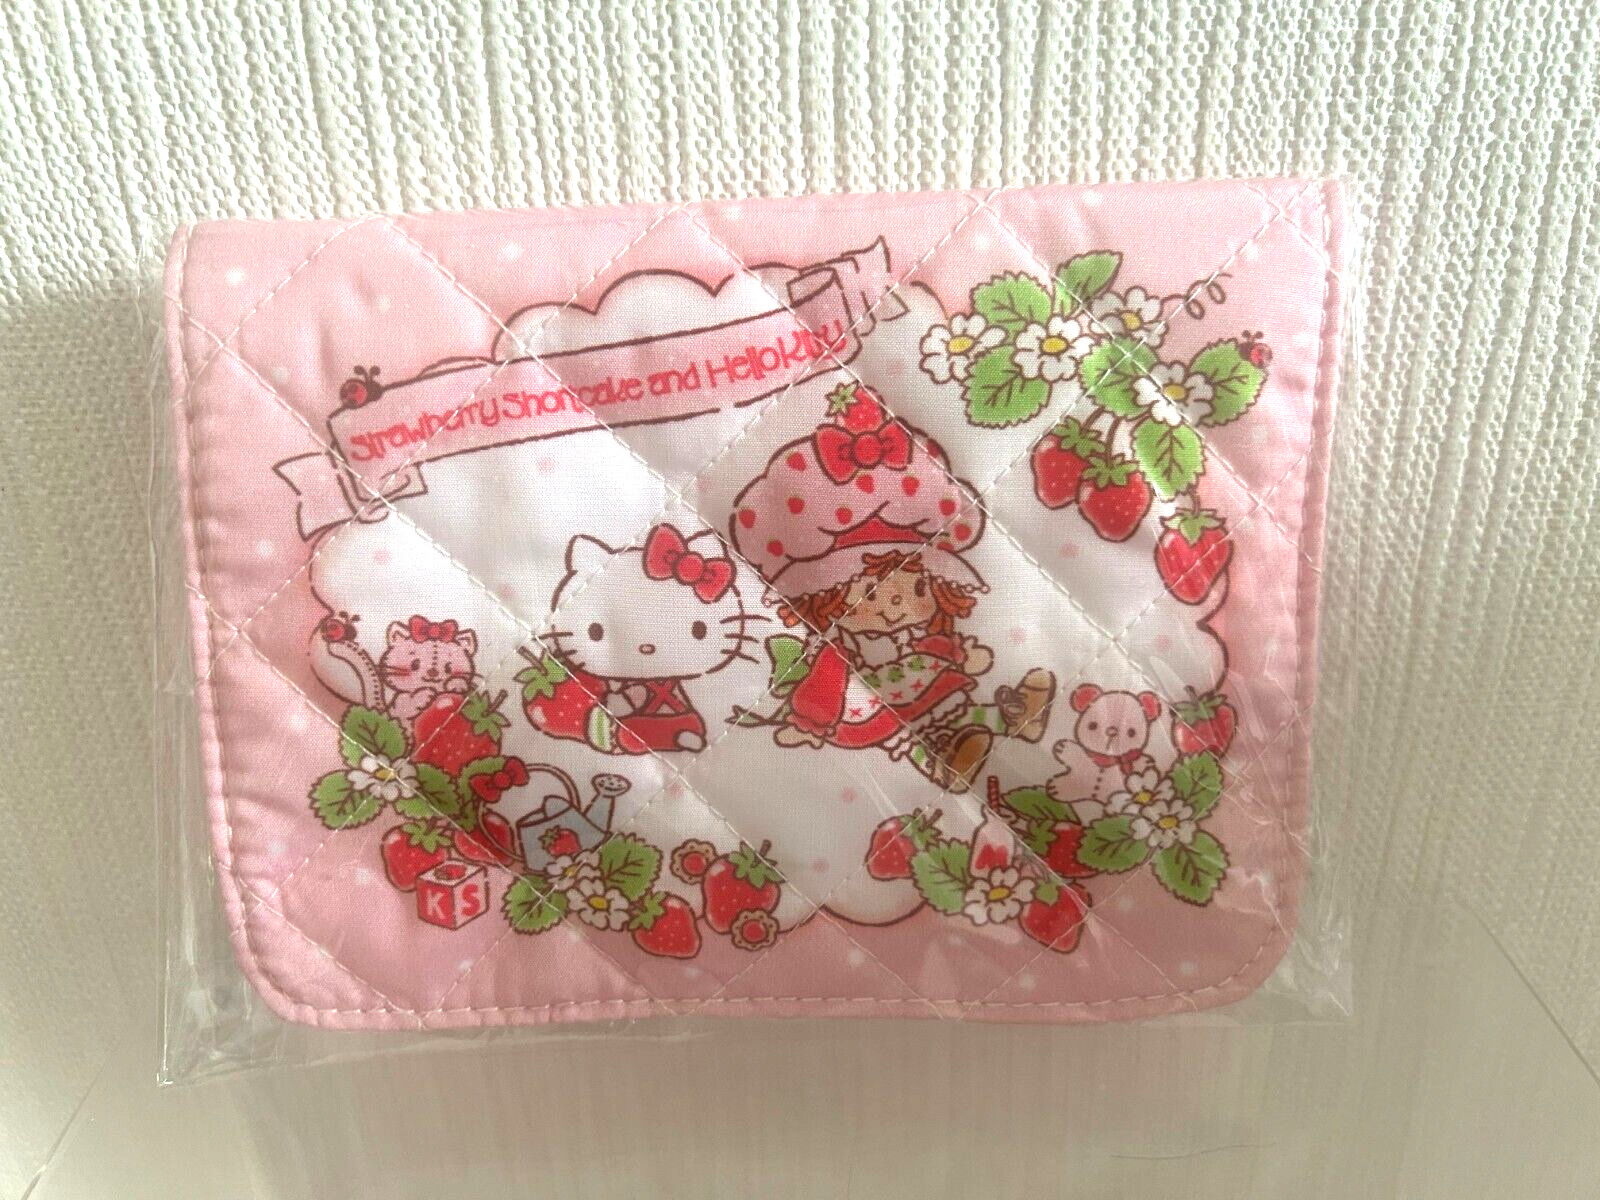 Sanrio Strawberry Shortcake x Hello Kitty Pouch Tissue Case Pink Rare Retro New